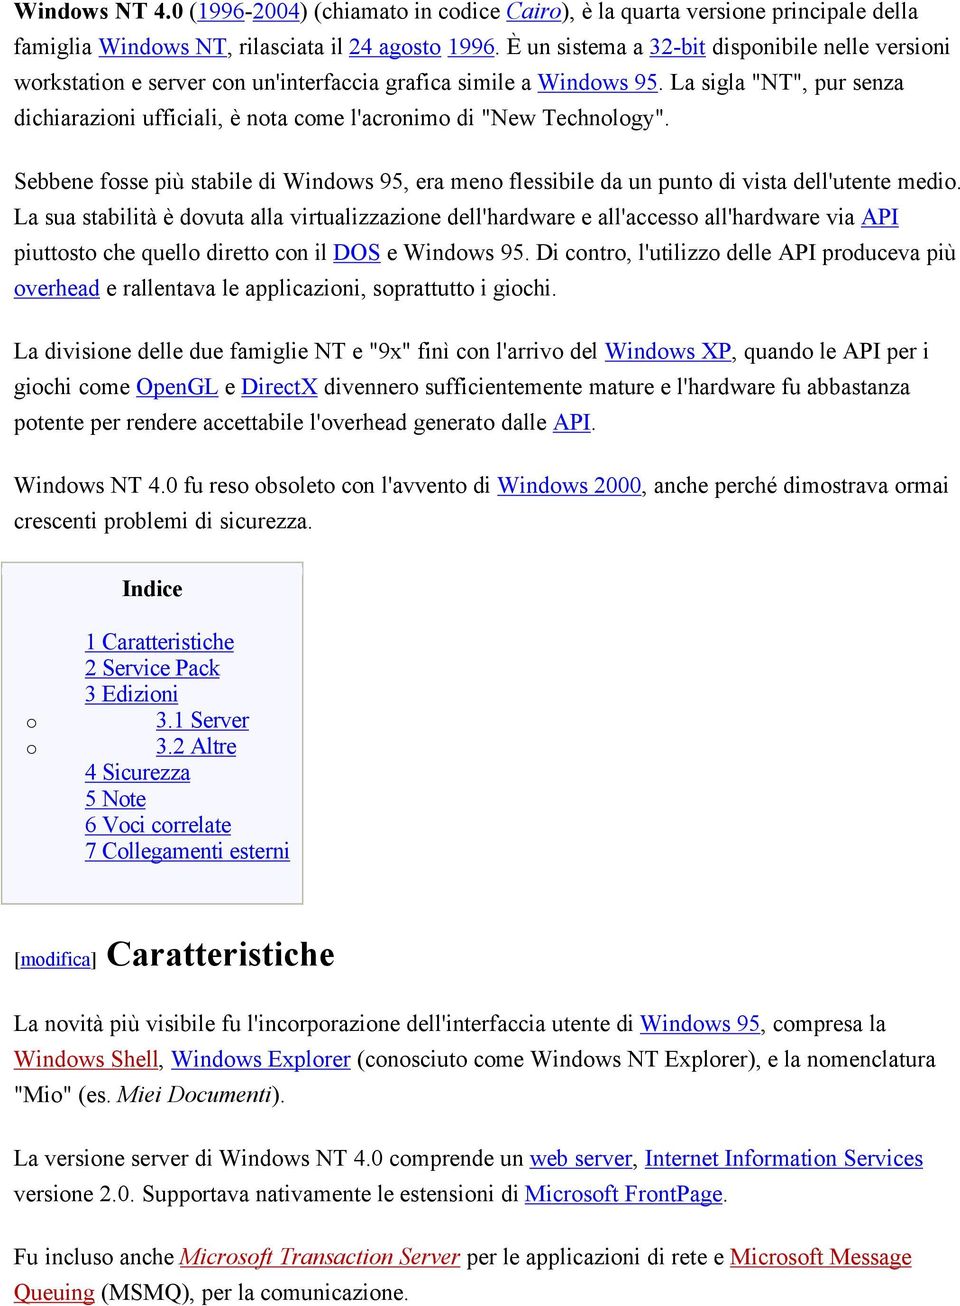 La sigla "NT", pur senza dichiarazioni ufficiali, è nota come l'acronimo di "New Technology". Sebbene fosse più stabile di Windows 95, era meno flessibile da un punto di vista dell'utente medio.